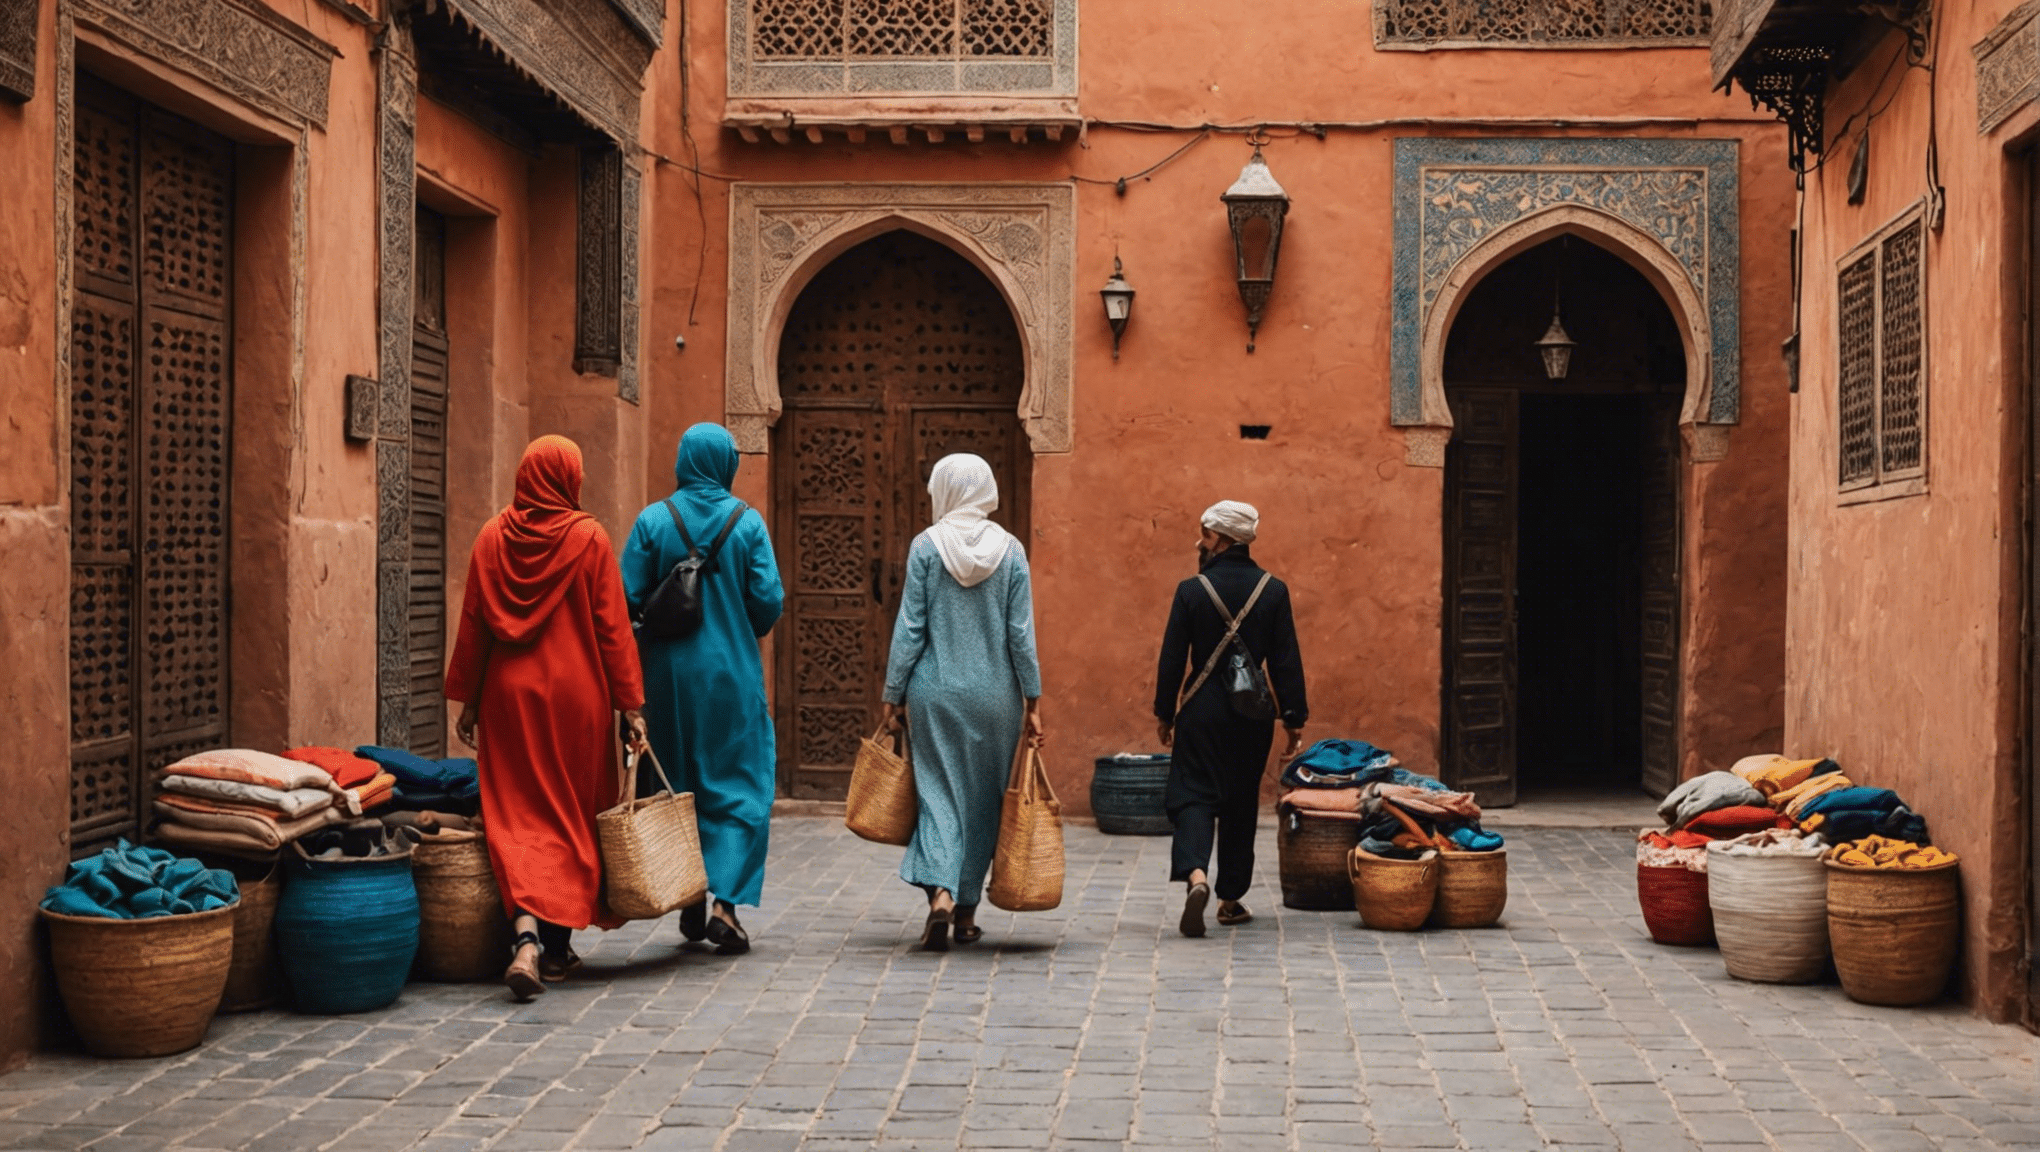 découvrez les conseils d'emballage essentiels pour une aventure d'avril inoubliable à Marrakech ! des vêtements légers aux accessoires indispensables, profitez au maximum de votre voyage avec notre guide d'emballage expert.